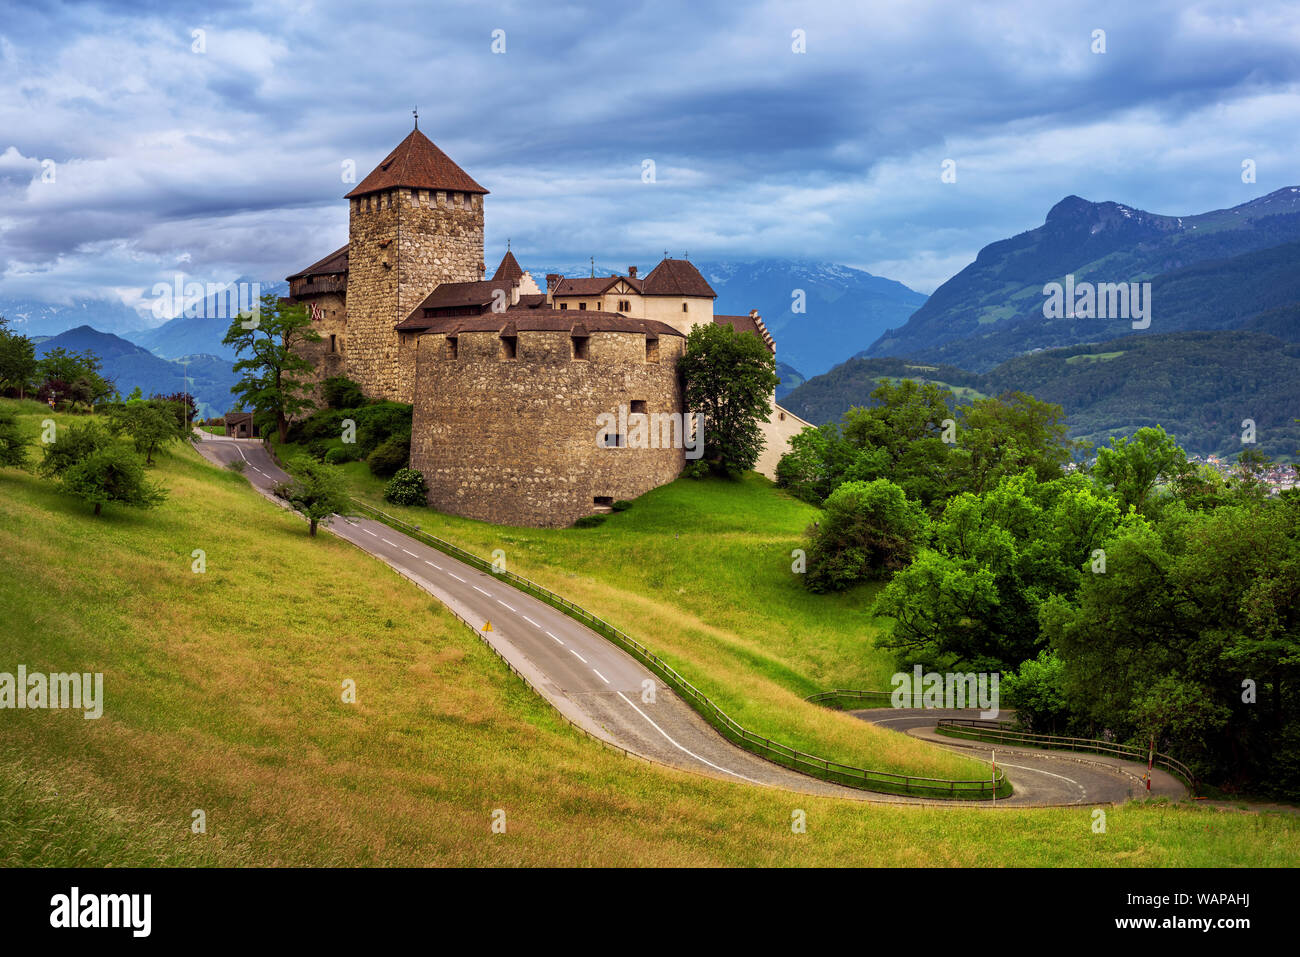 Vaduz castle, Liechtenstein, in the Alps mountains in the blue evening light Stock Photo